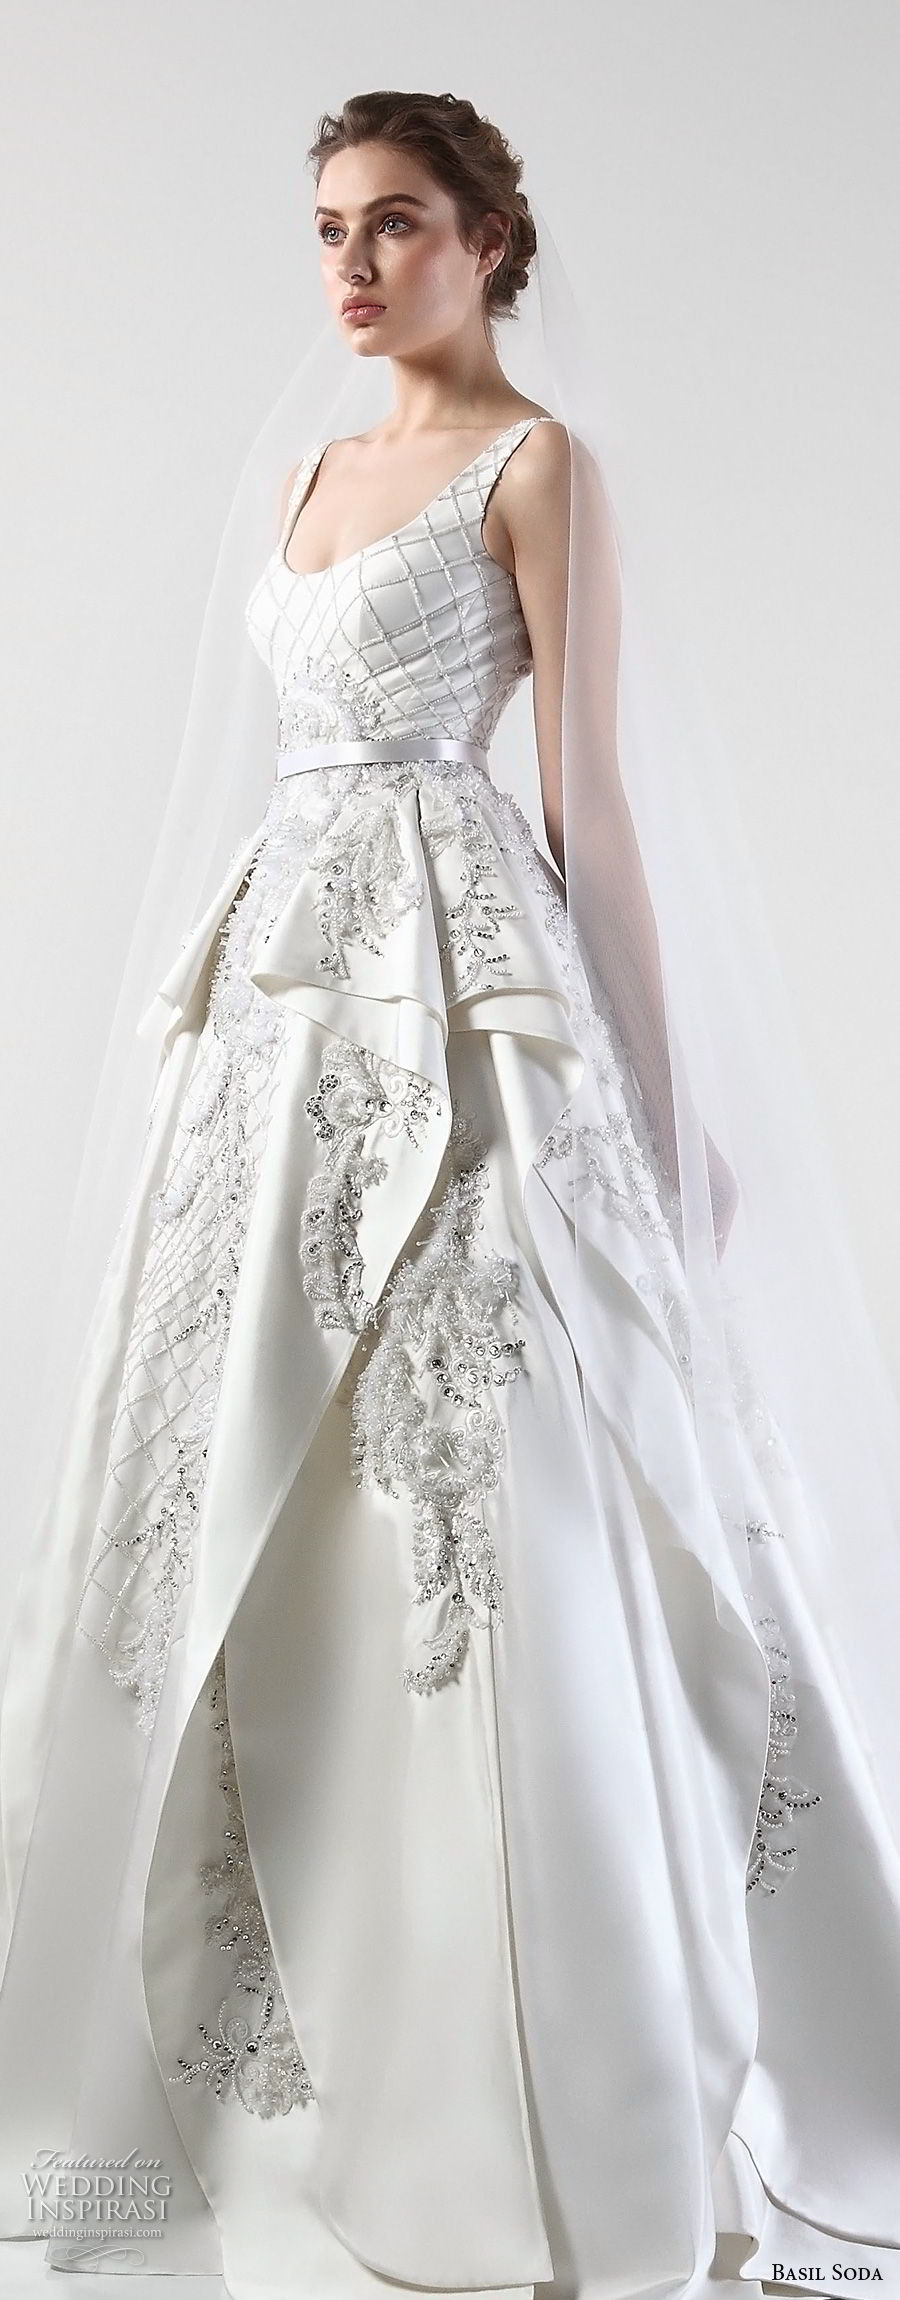 basil soda 2017 bridal sleeveless scoop neck full embellishment layered skirt glamorous ball gown wedding dress chapel train (5) zv